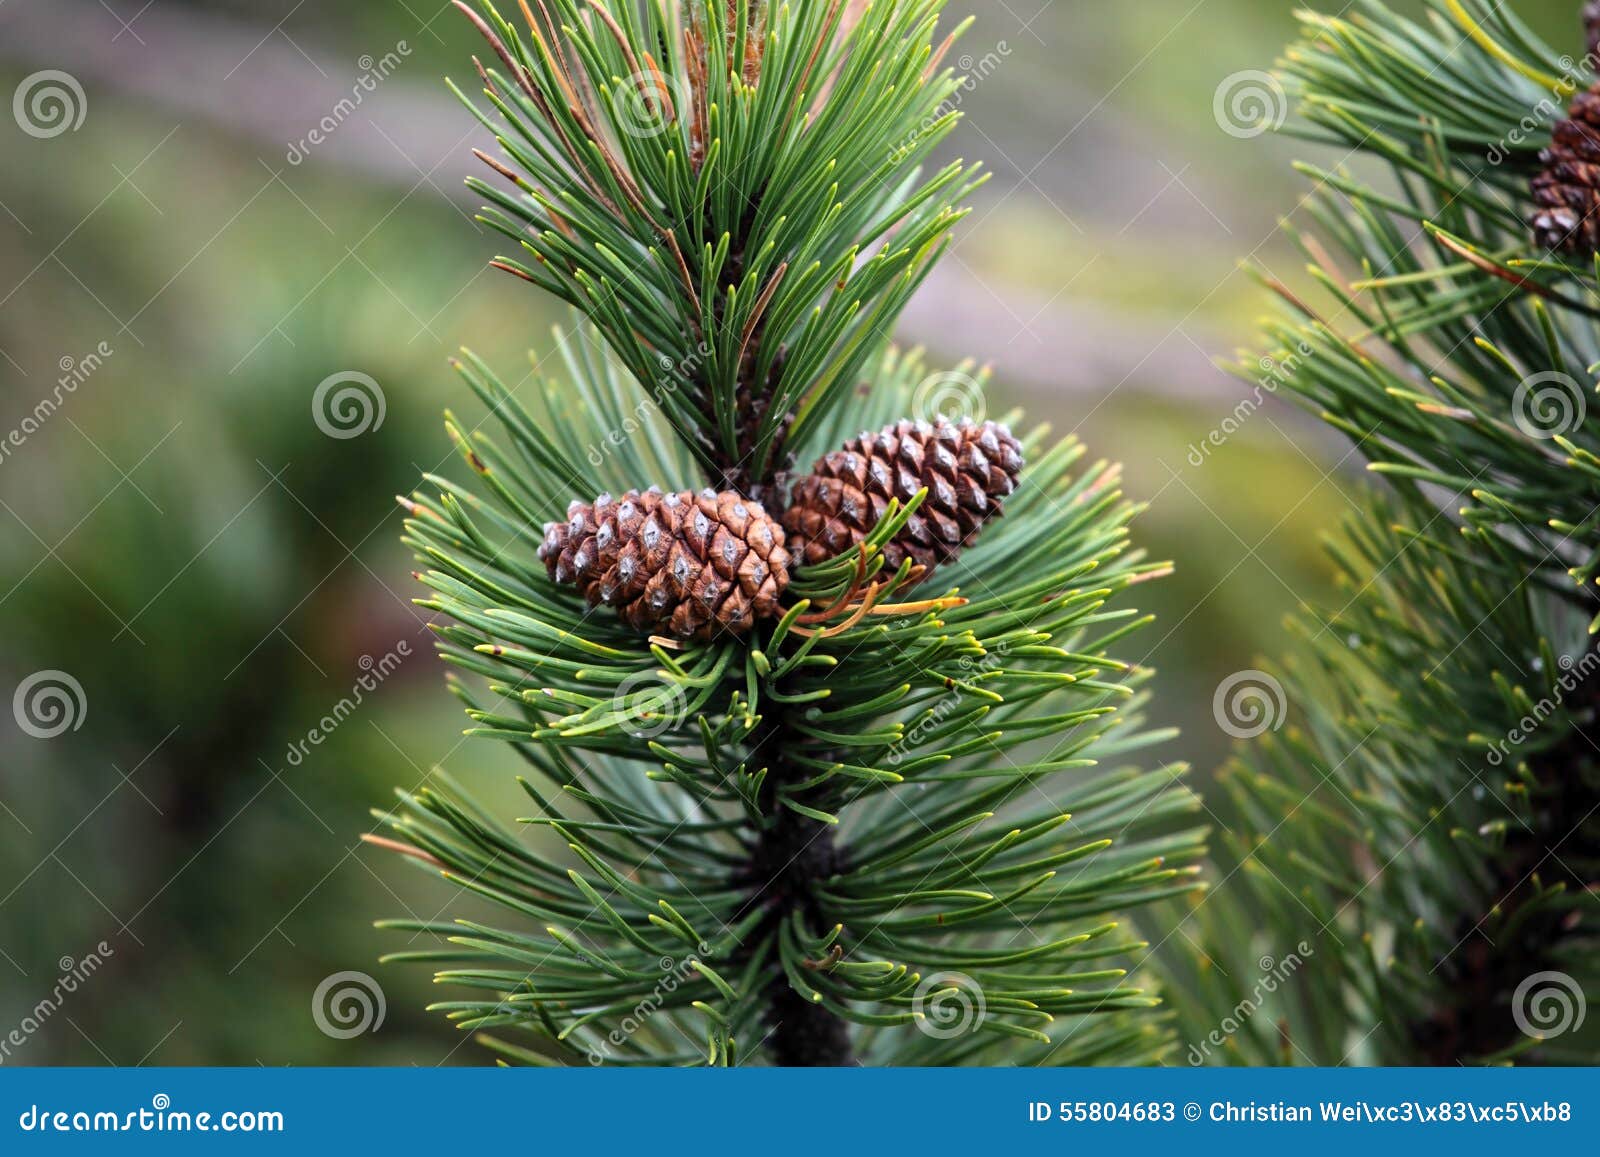 dwarf mountain pine (pinus mugo)